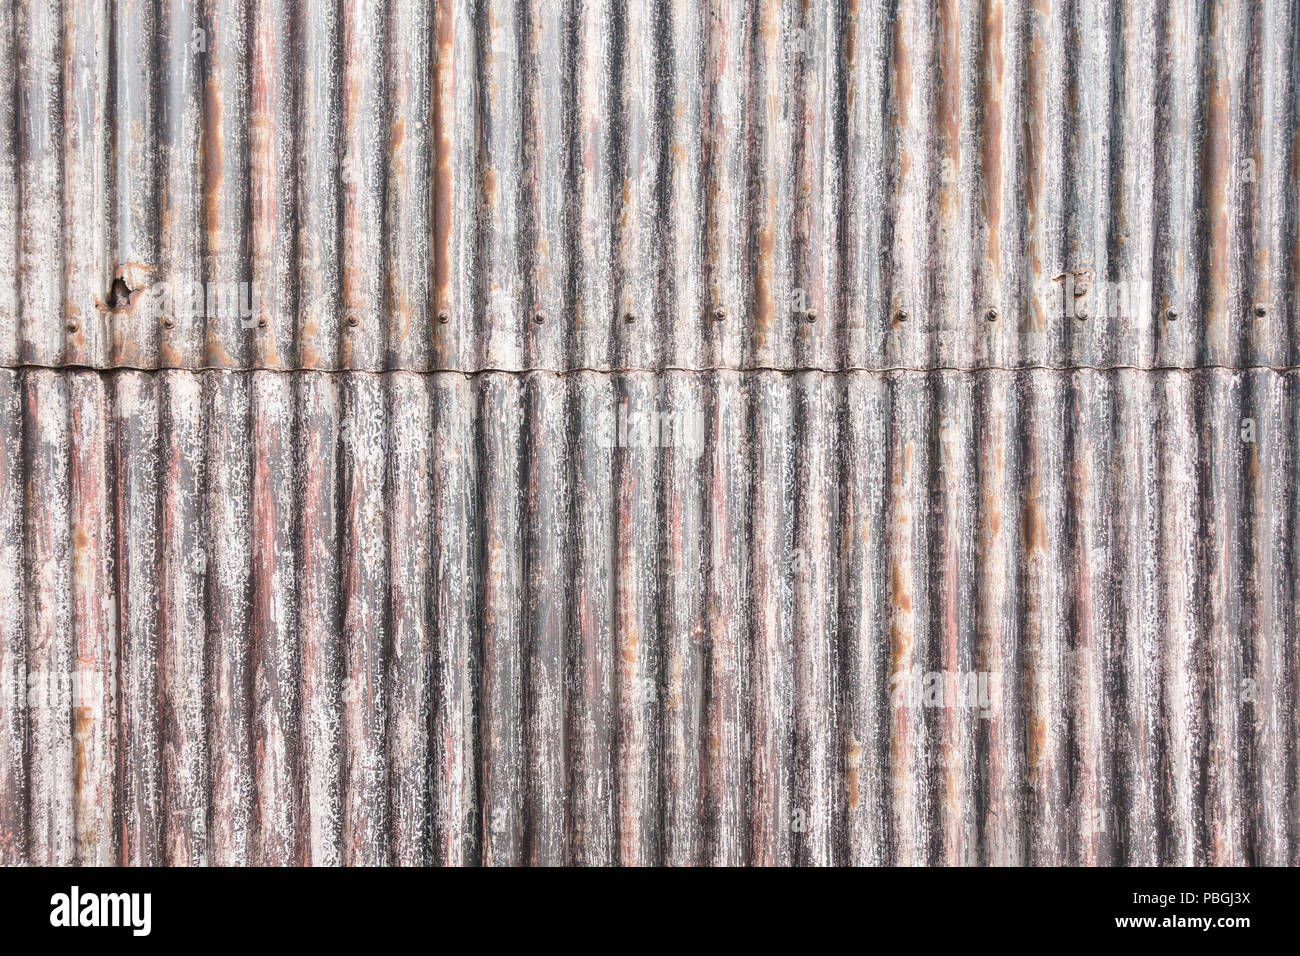 Granero de metal corrugado pared hecha de hojas se unieron por medio de tornillos Foto de stock